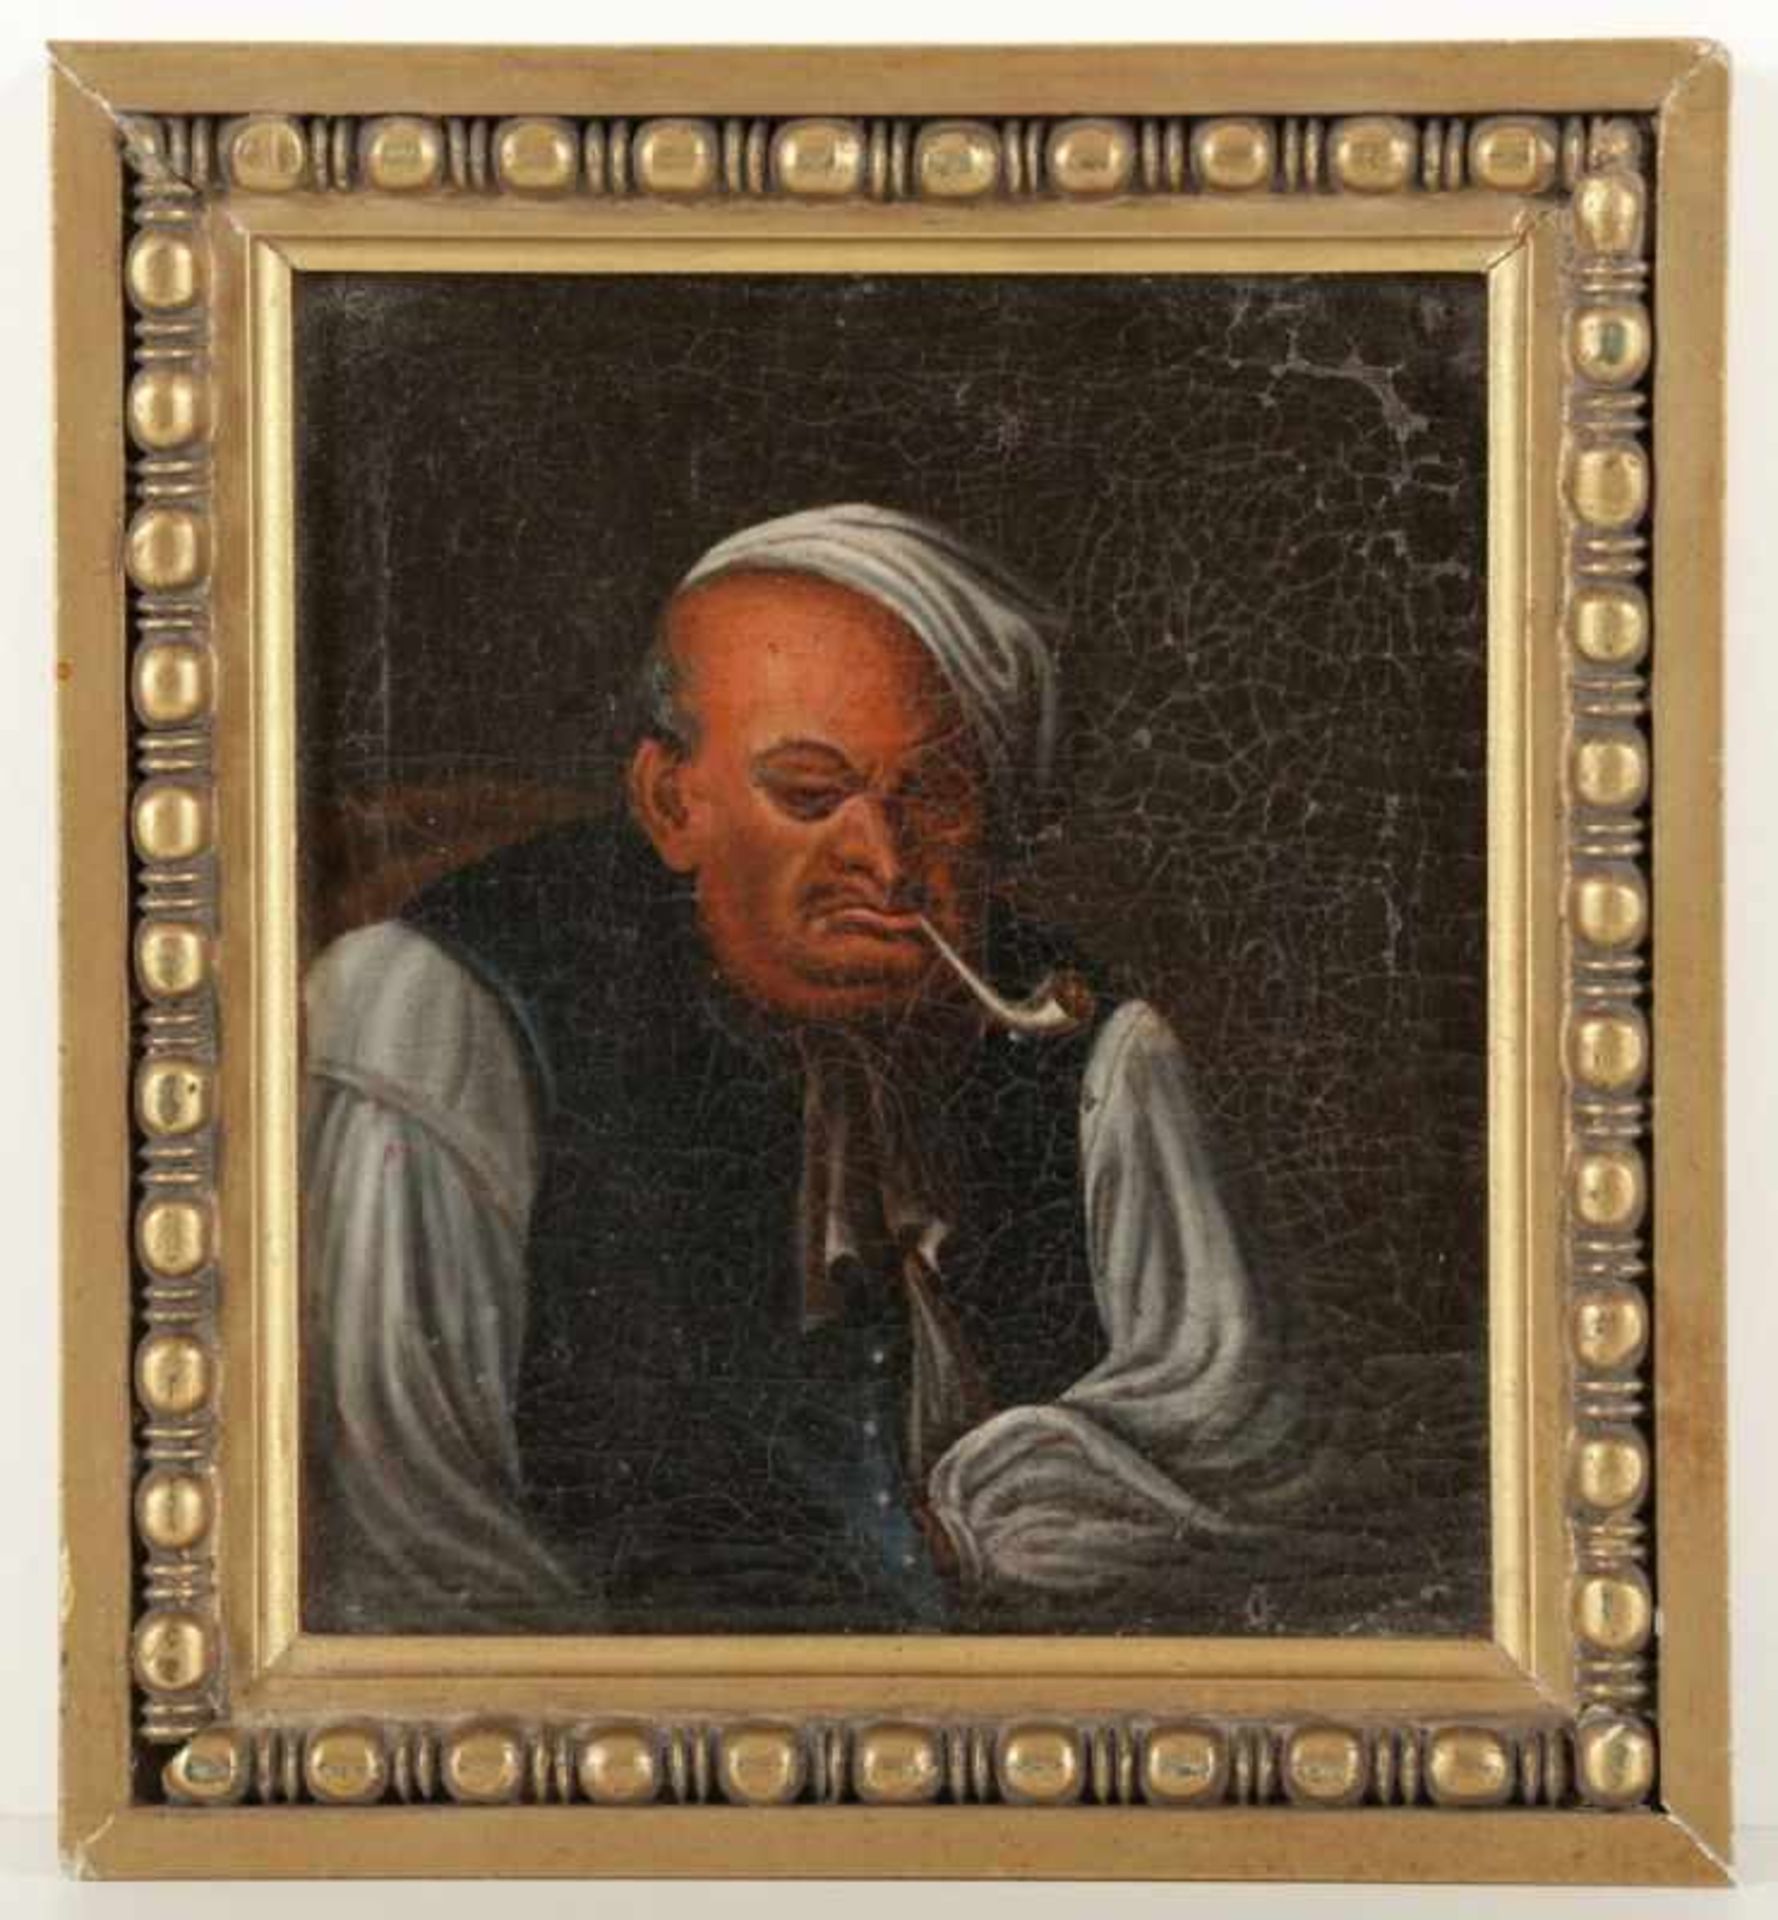 Künstler des 18. Jahrhunderts- Mann mit Pfeife - Öl/Lwd. Doubl. 19,5 x 17,5 cm. Rahmen. Krakelee. - Bild 2 aus 2